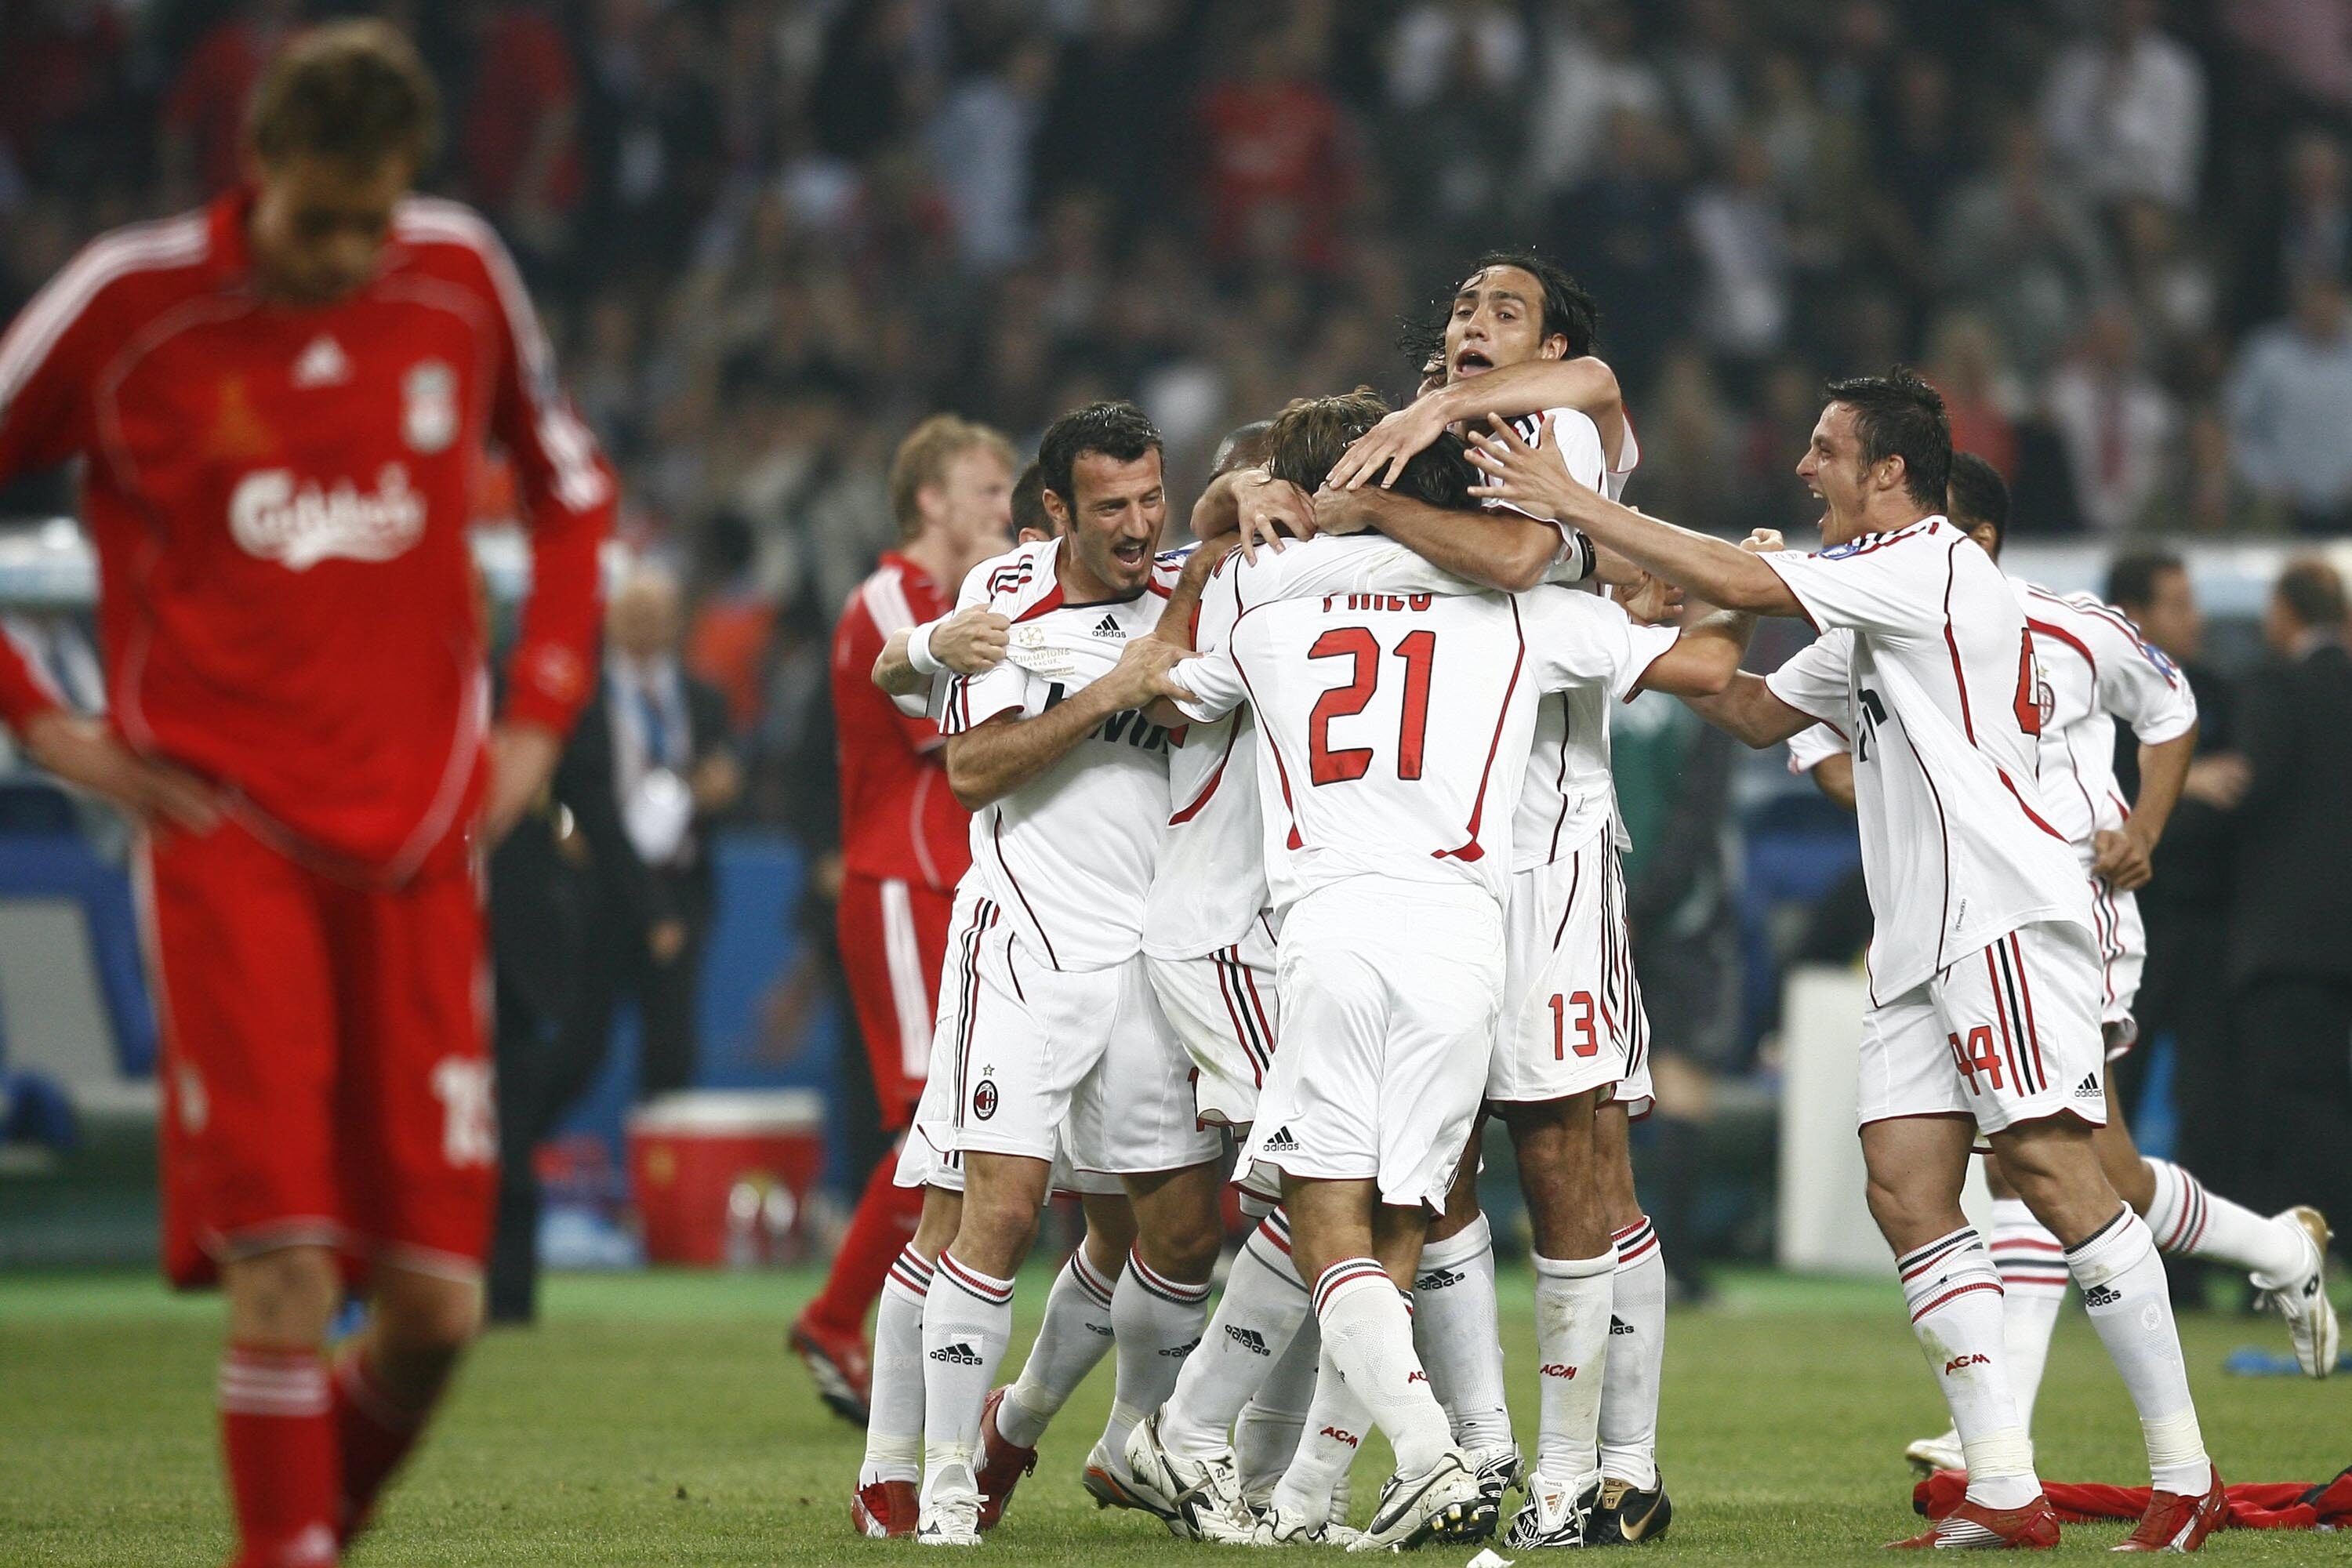 Real Madrid chega ao 8ª título do Mundial de Clubes; os maiores campeões -  Placar - O futebol sem barreiras para você